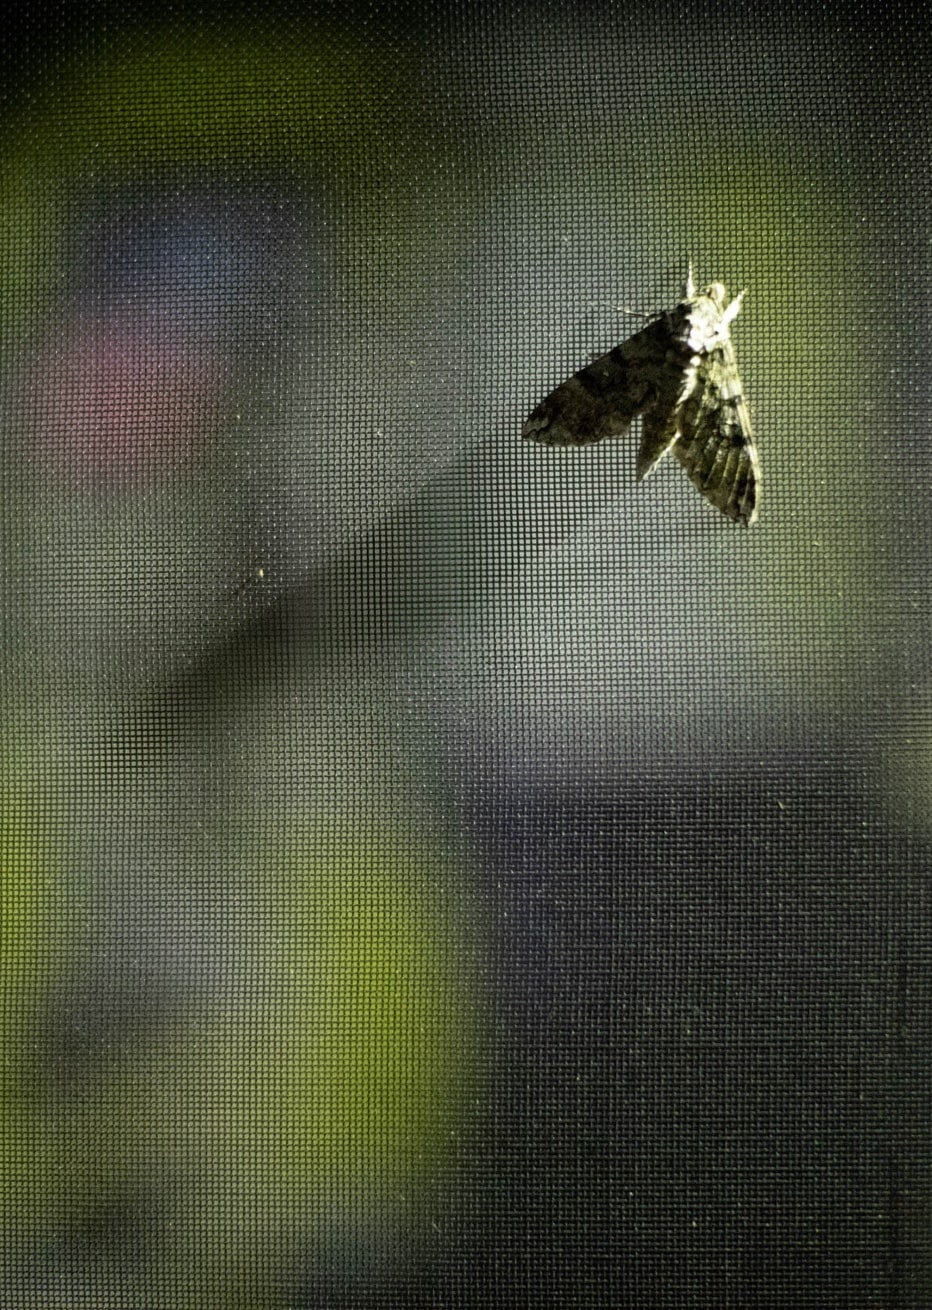 large florida fly